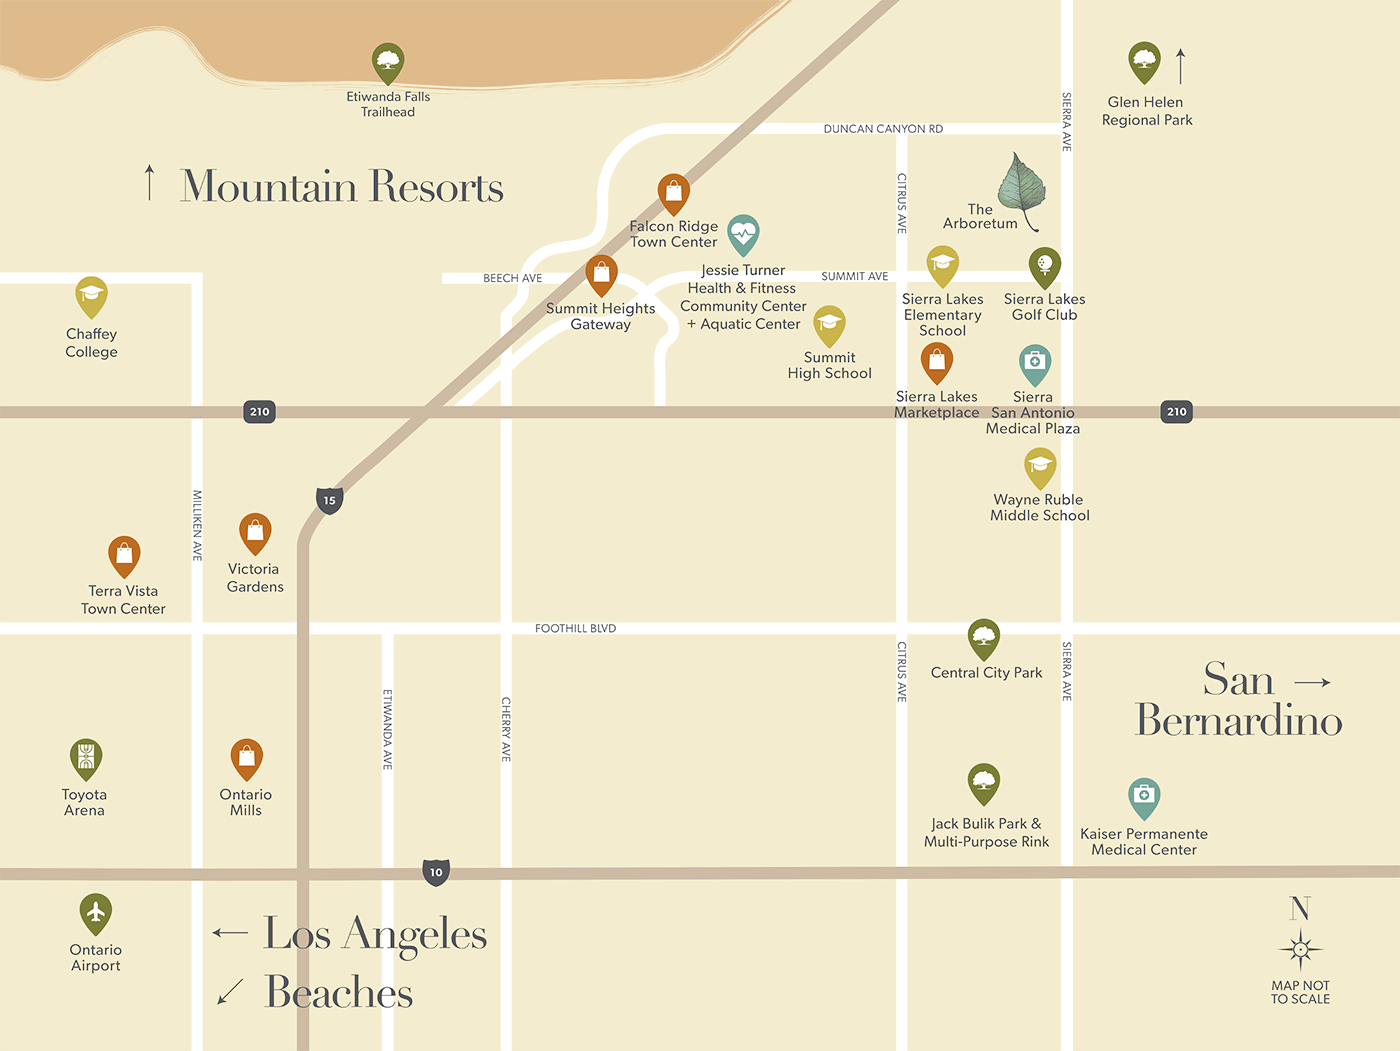 Area Map - The Arboretum